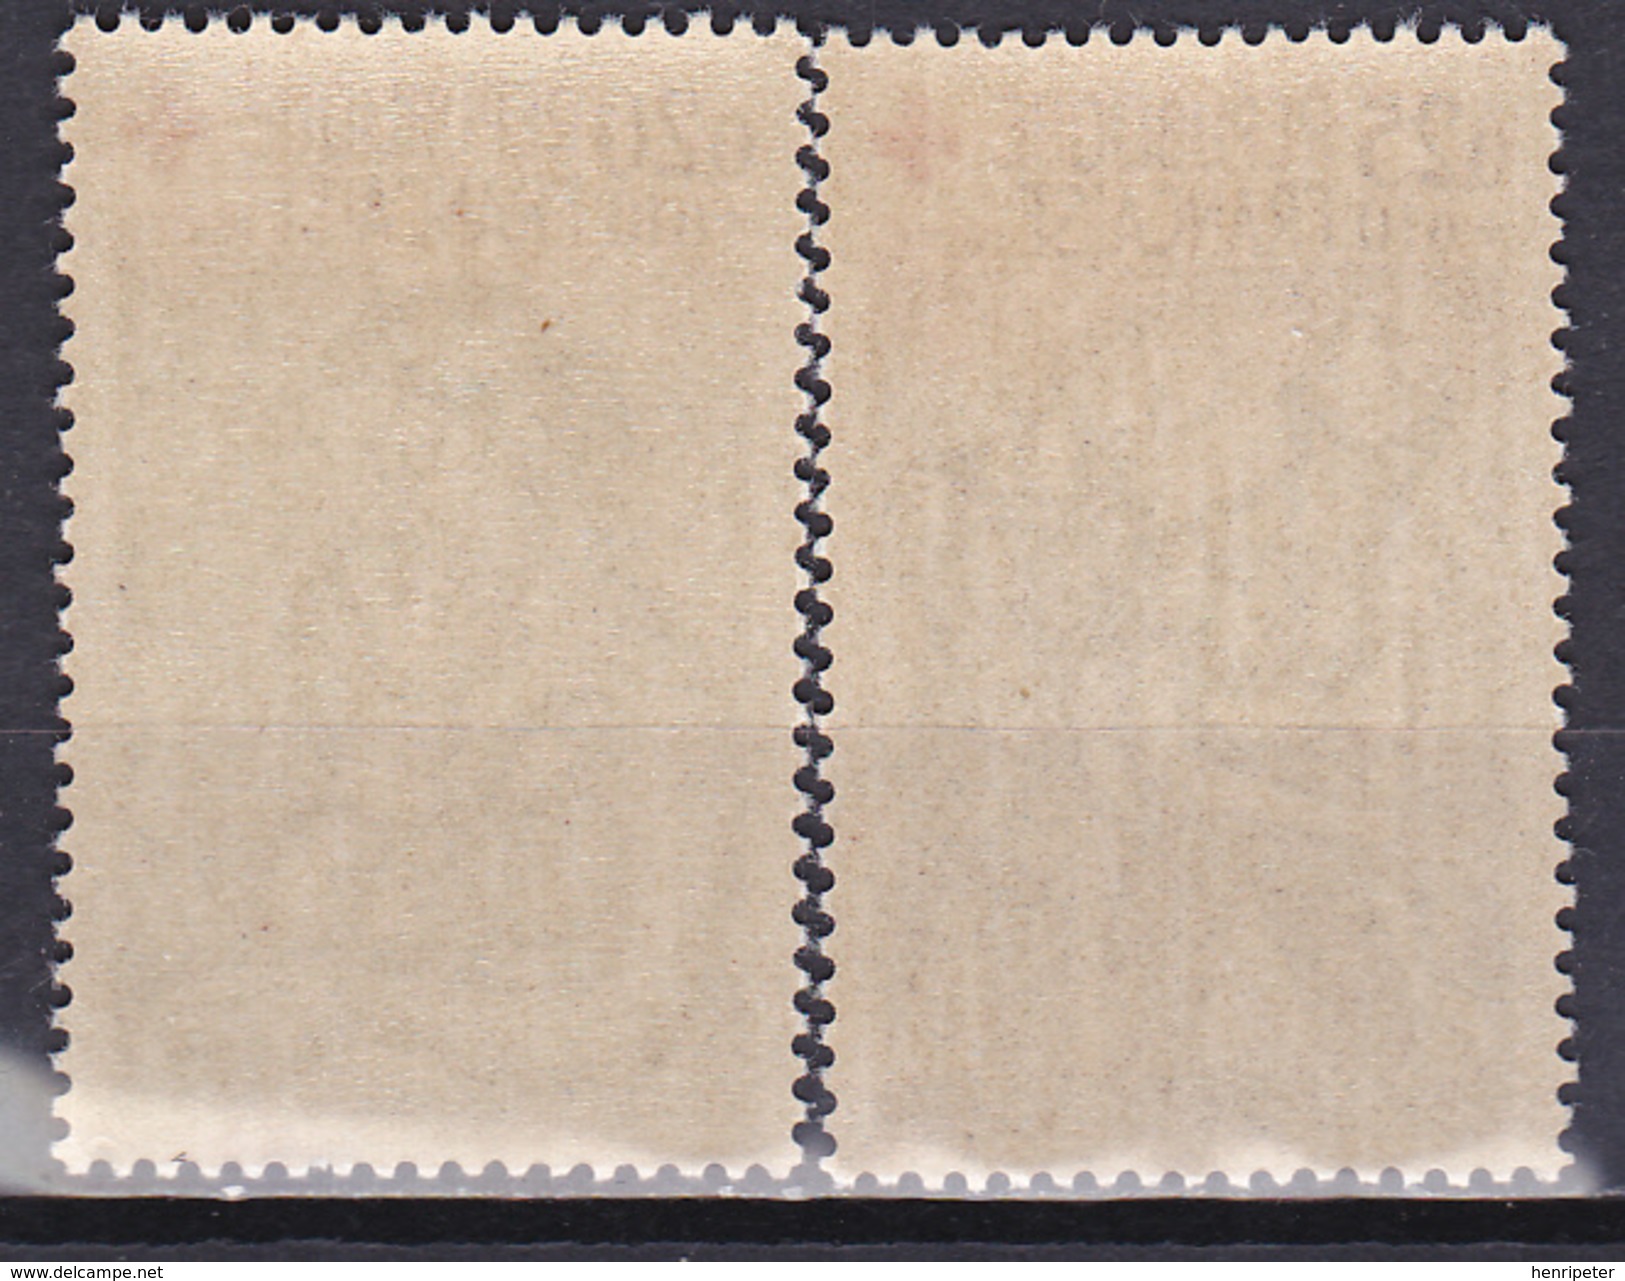 Série De 2 Timbres-poste Neufs** - Croix-Rouge Reproductions D'oeuvres De Rouault - N° 1323-1324 (Yvert) - France 1961 - Neufs